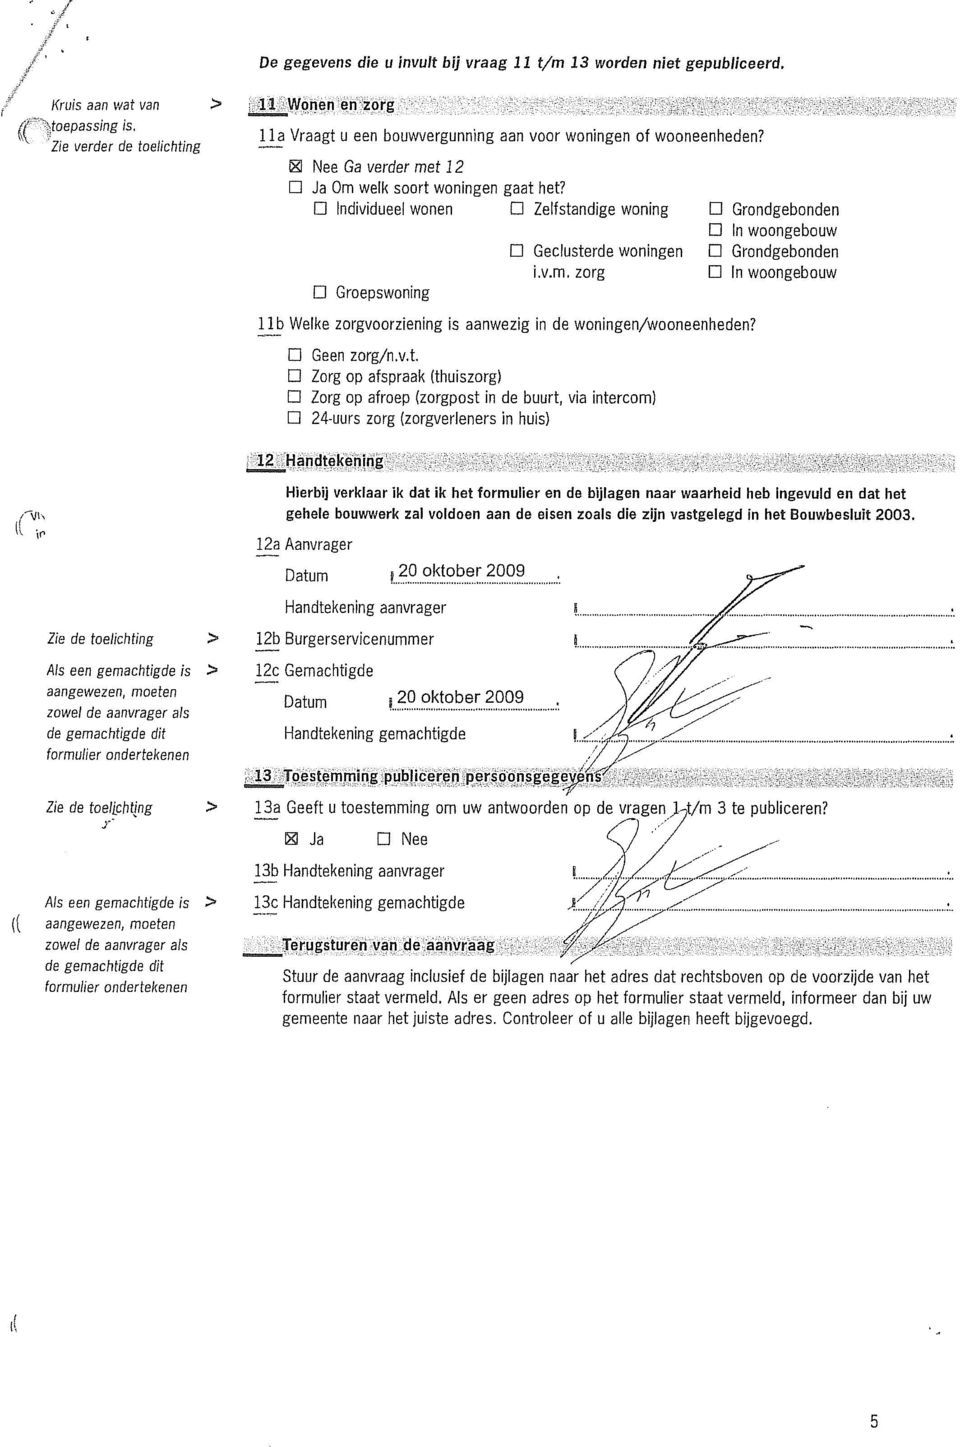 gemachtigde is > (( aangewezen, moeten zowel de aanvrager als de gemachtigde dit formulier ondertekenen E~ Vraagt u een bouwvergunning aan voor woningen of wooneenheden?